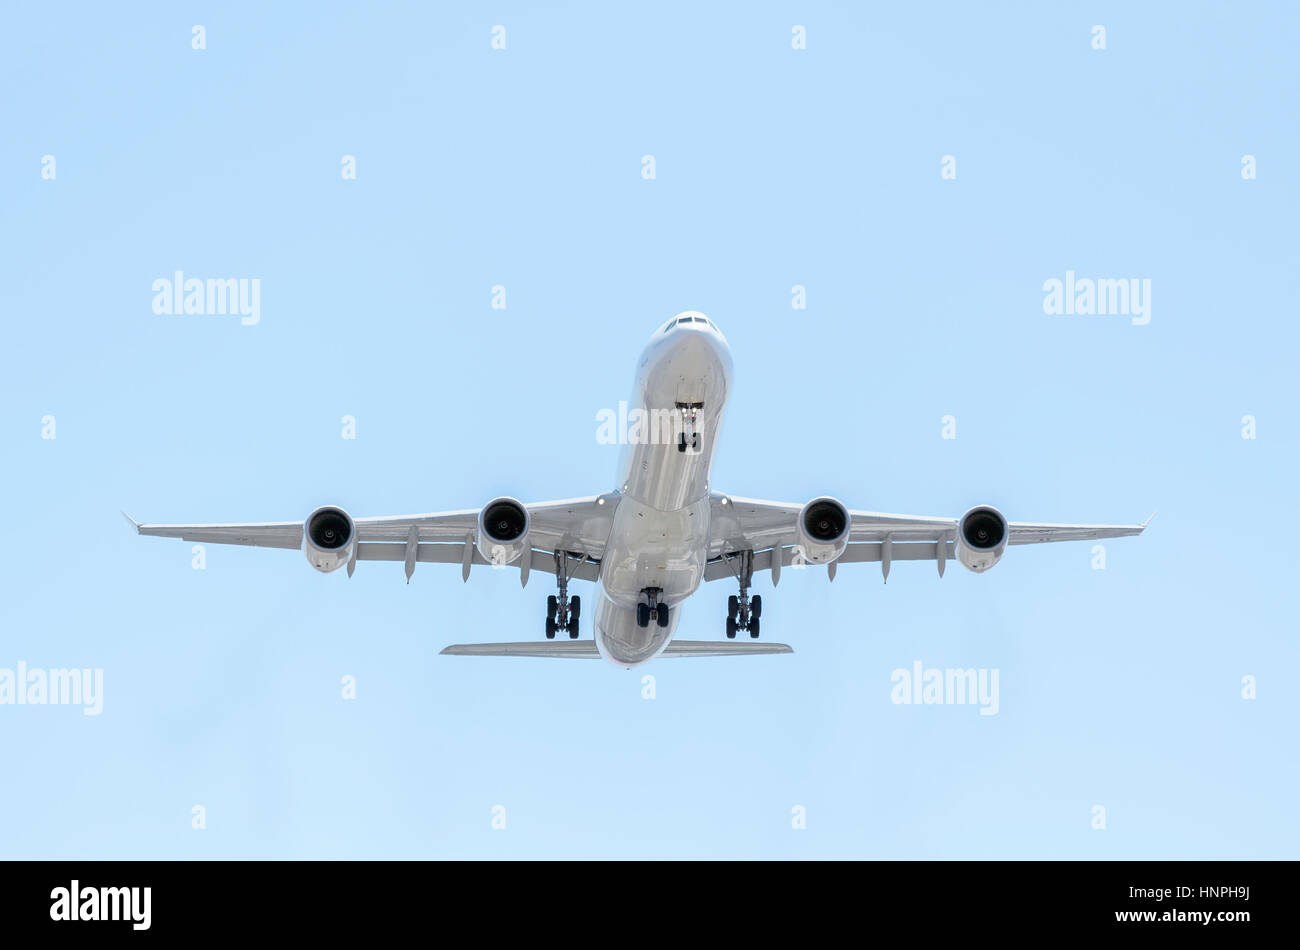 Vollständig weiße Flugzeug Airbus A340, der Iberia Airline landet. Spanische Unternehmen. Blauer Himmel. Sonniger Tag des Frühlings. Stockfoto